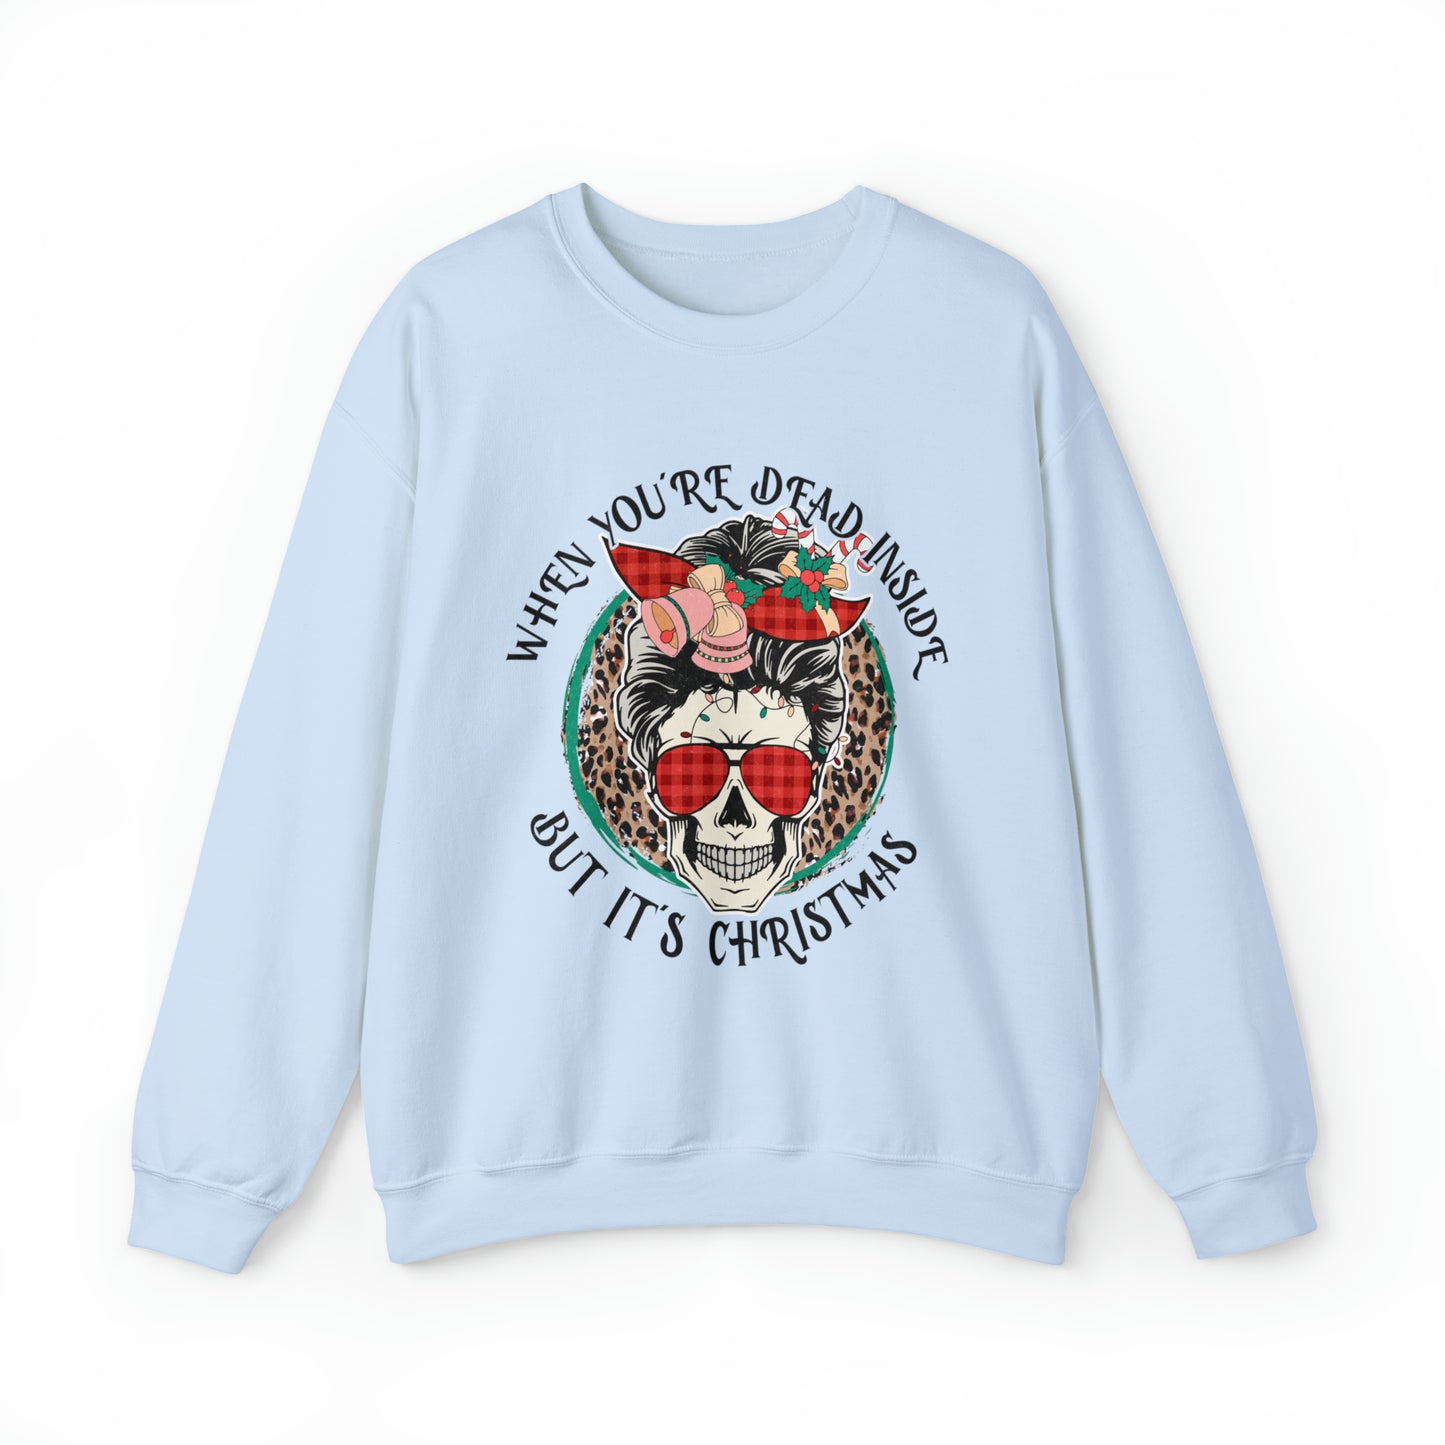 Funny Dead Inside But It's Christmas Women's Sweatshirt